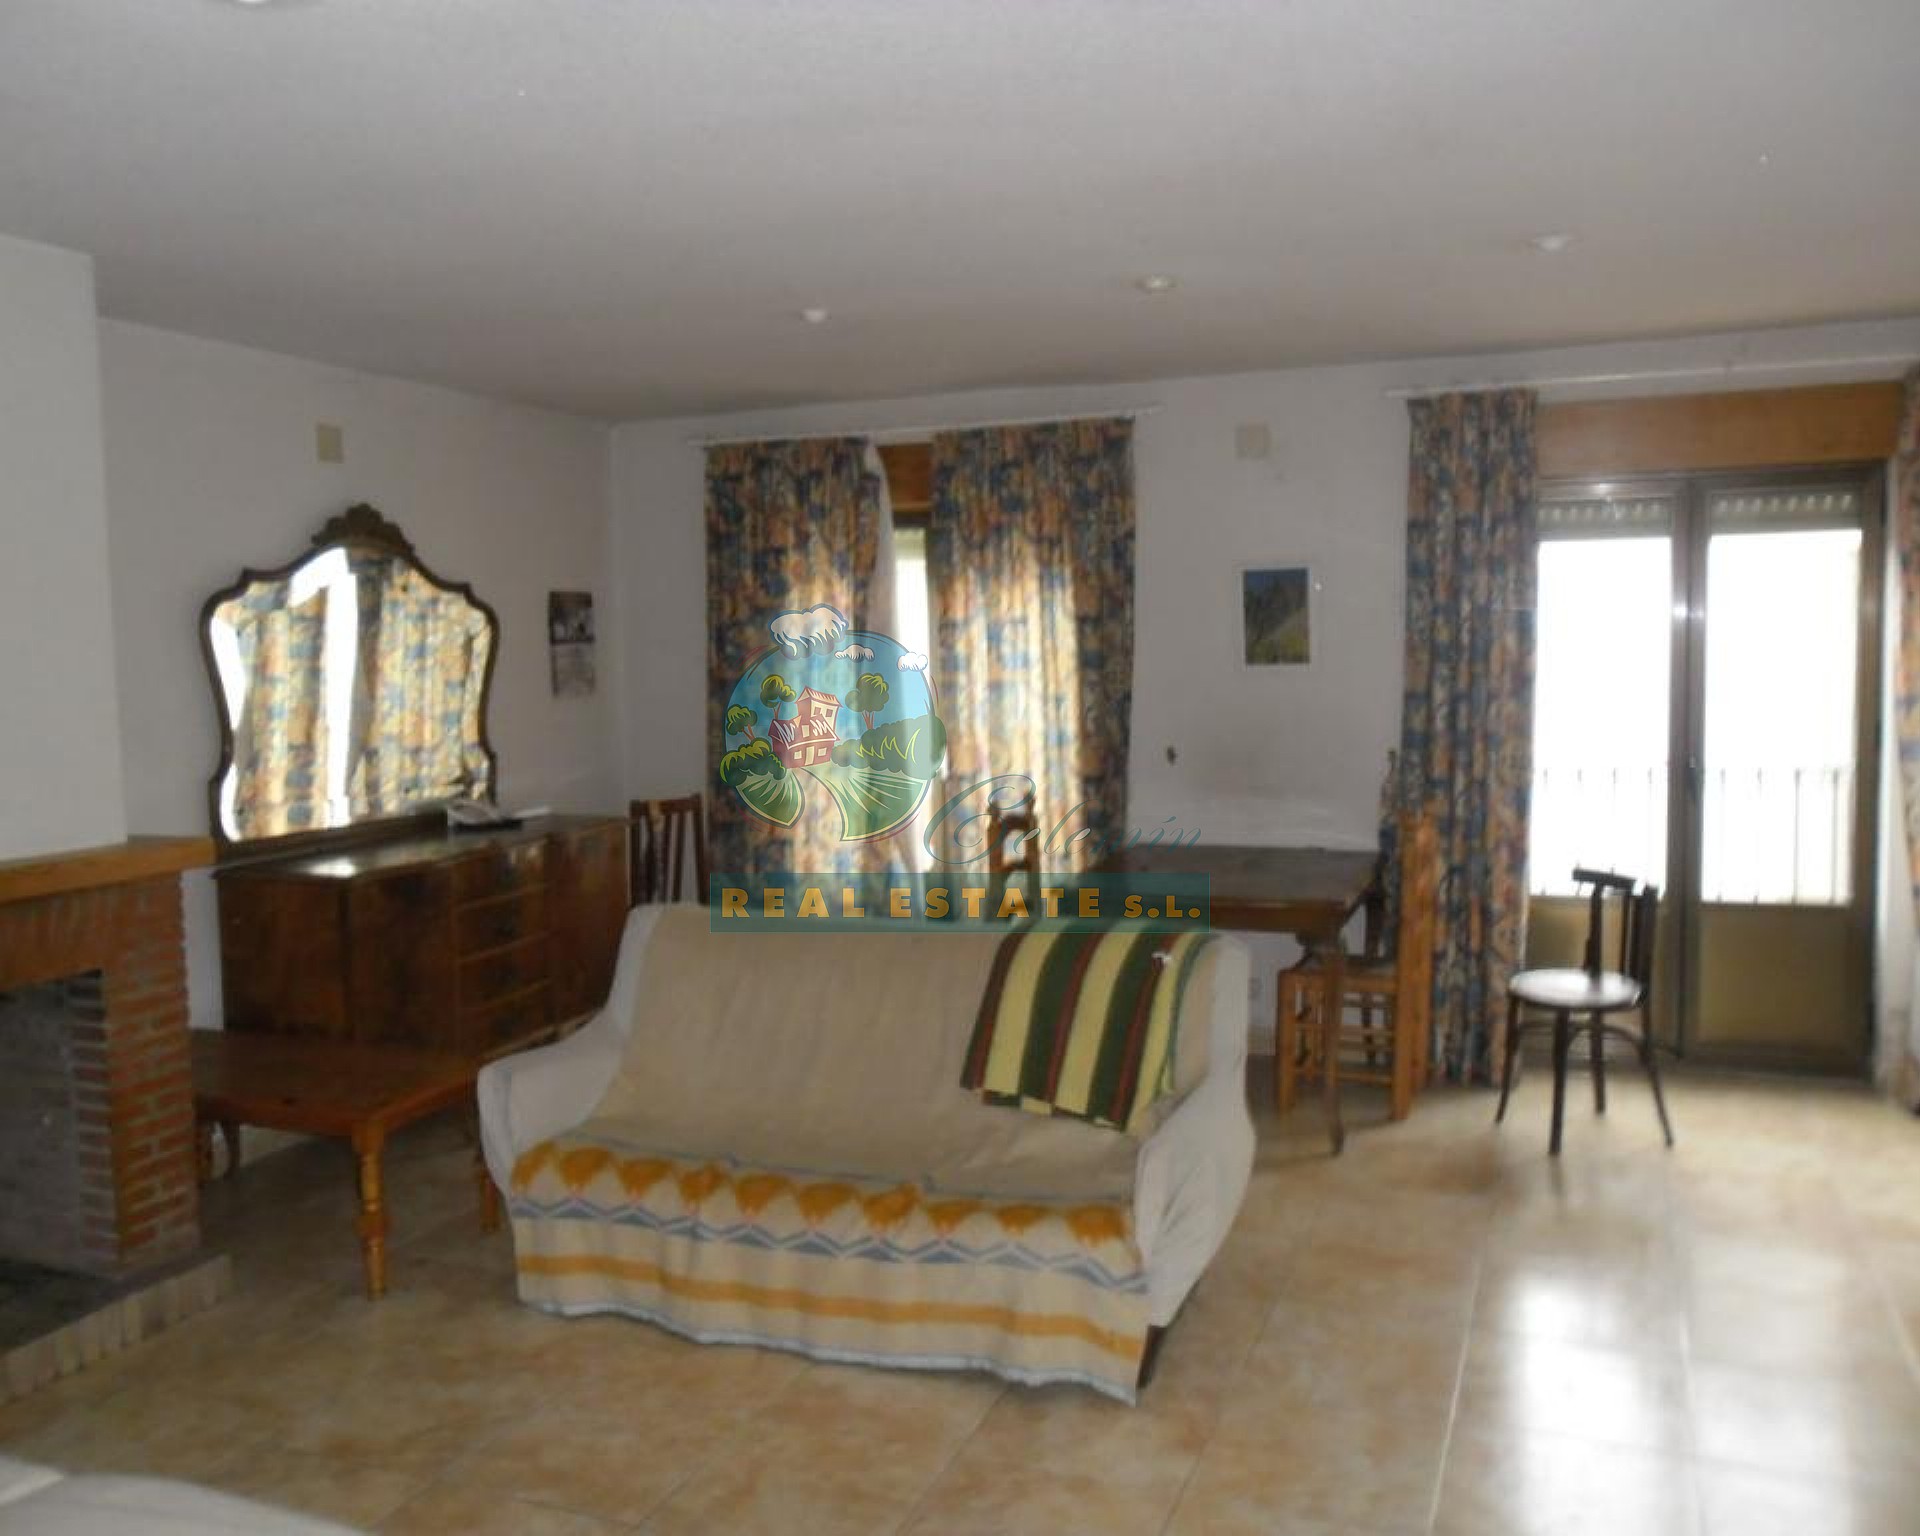 4-bedroom flat in Sierra a de Gredos.